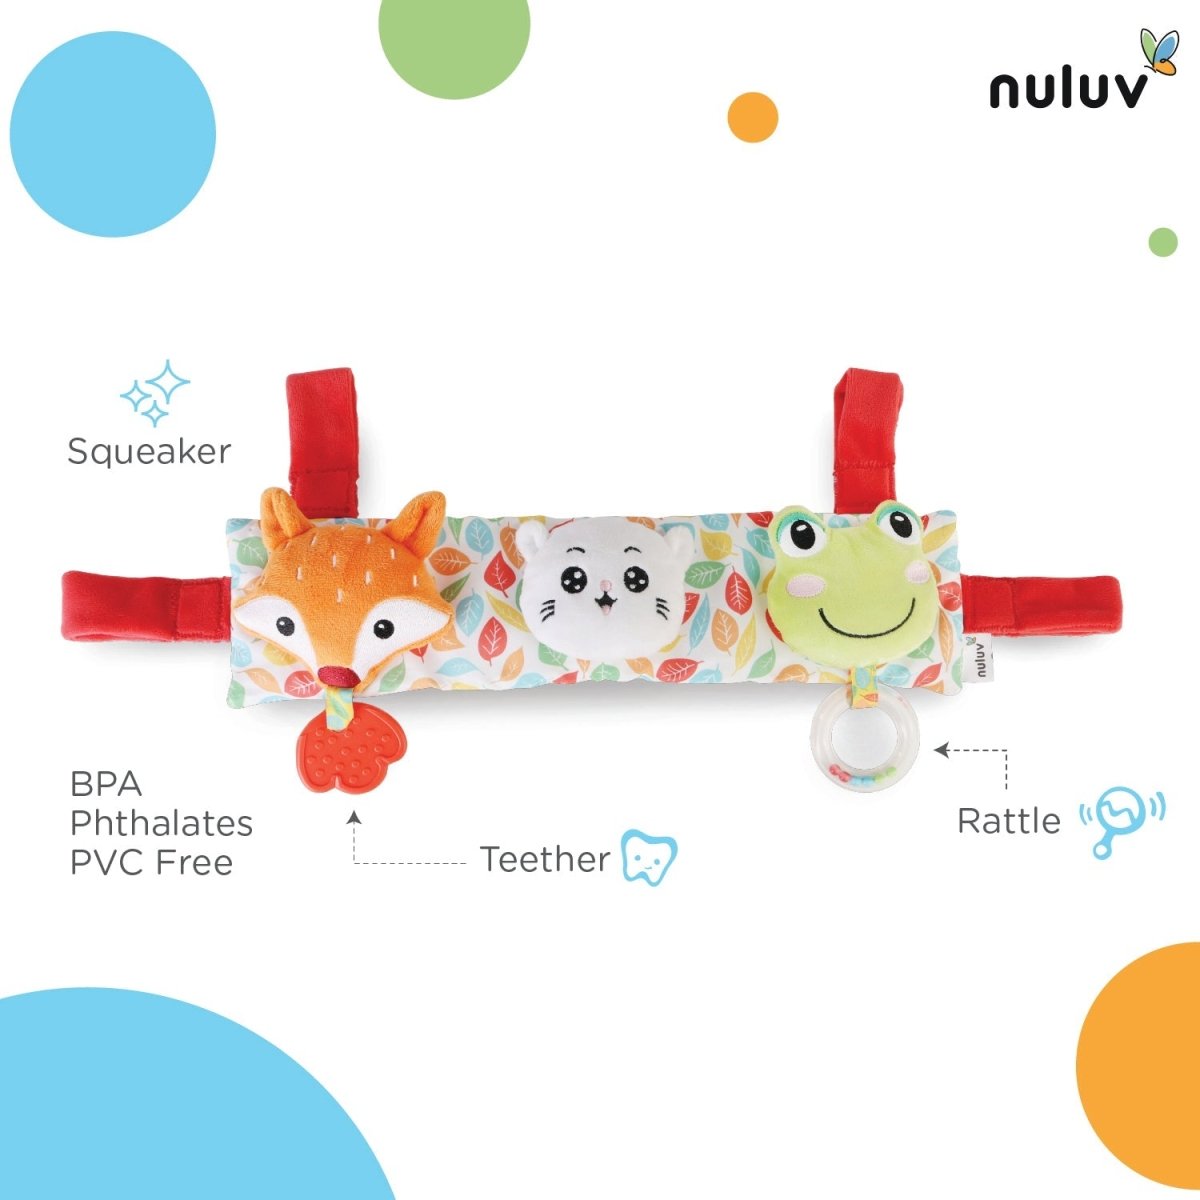 Nuluv Stroller- Cot Toy- Soft toy - NU-I-0013